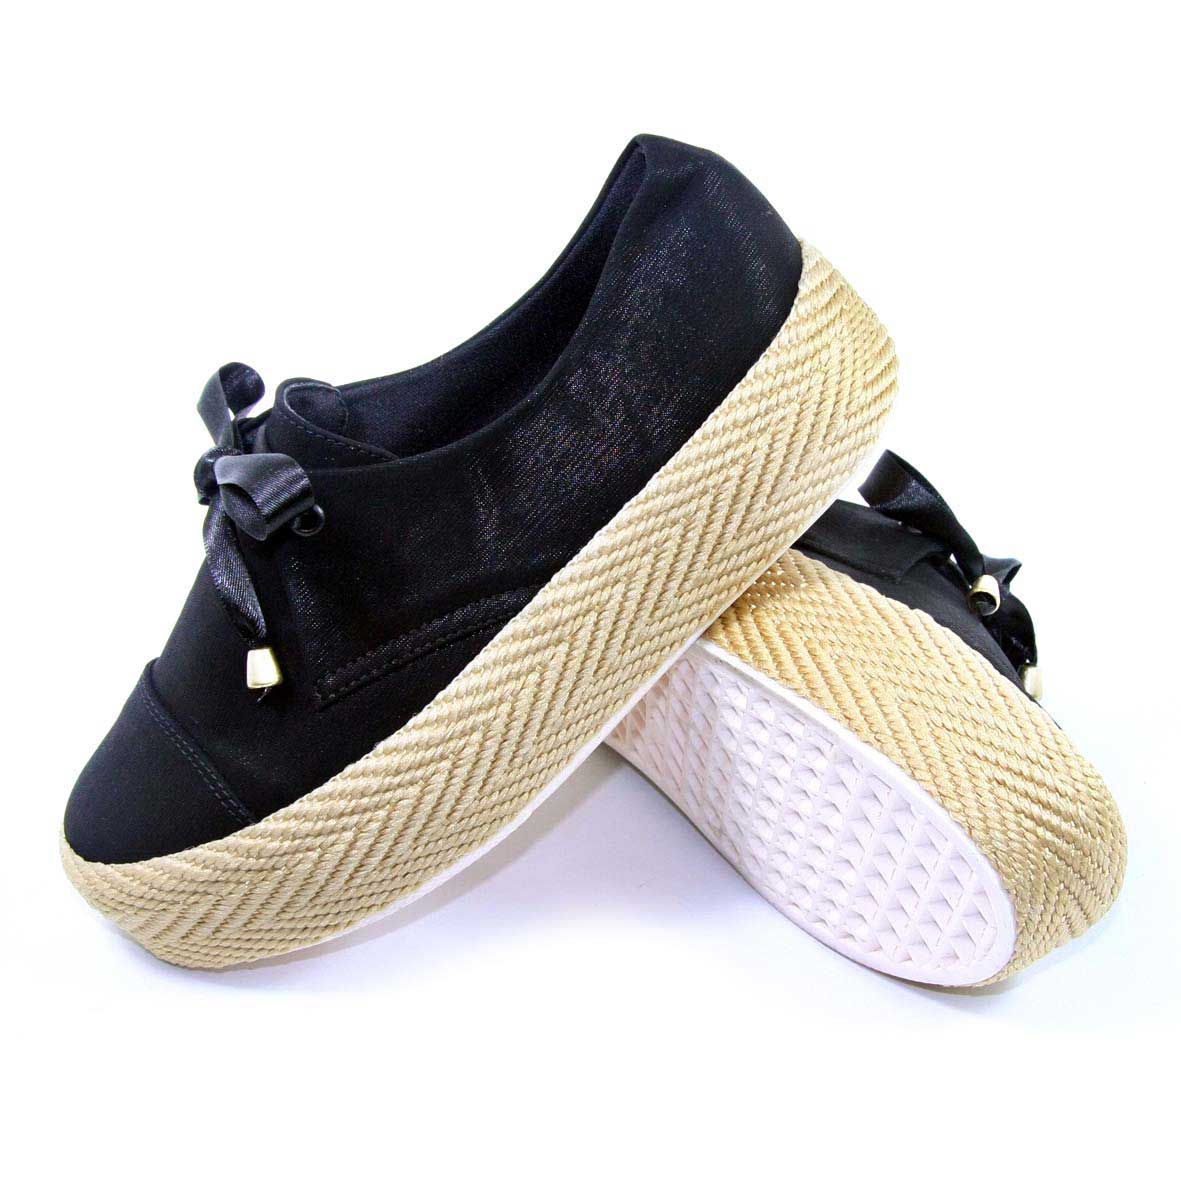 Zapatos de color negro suela de yute y cordon cinta con puntas decoradas